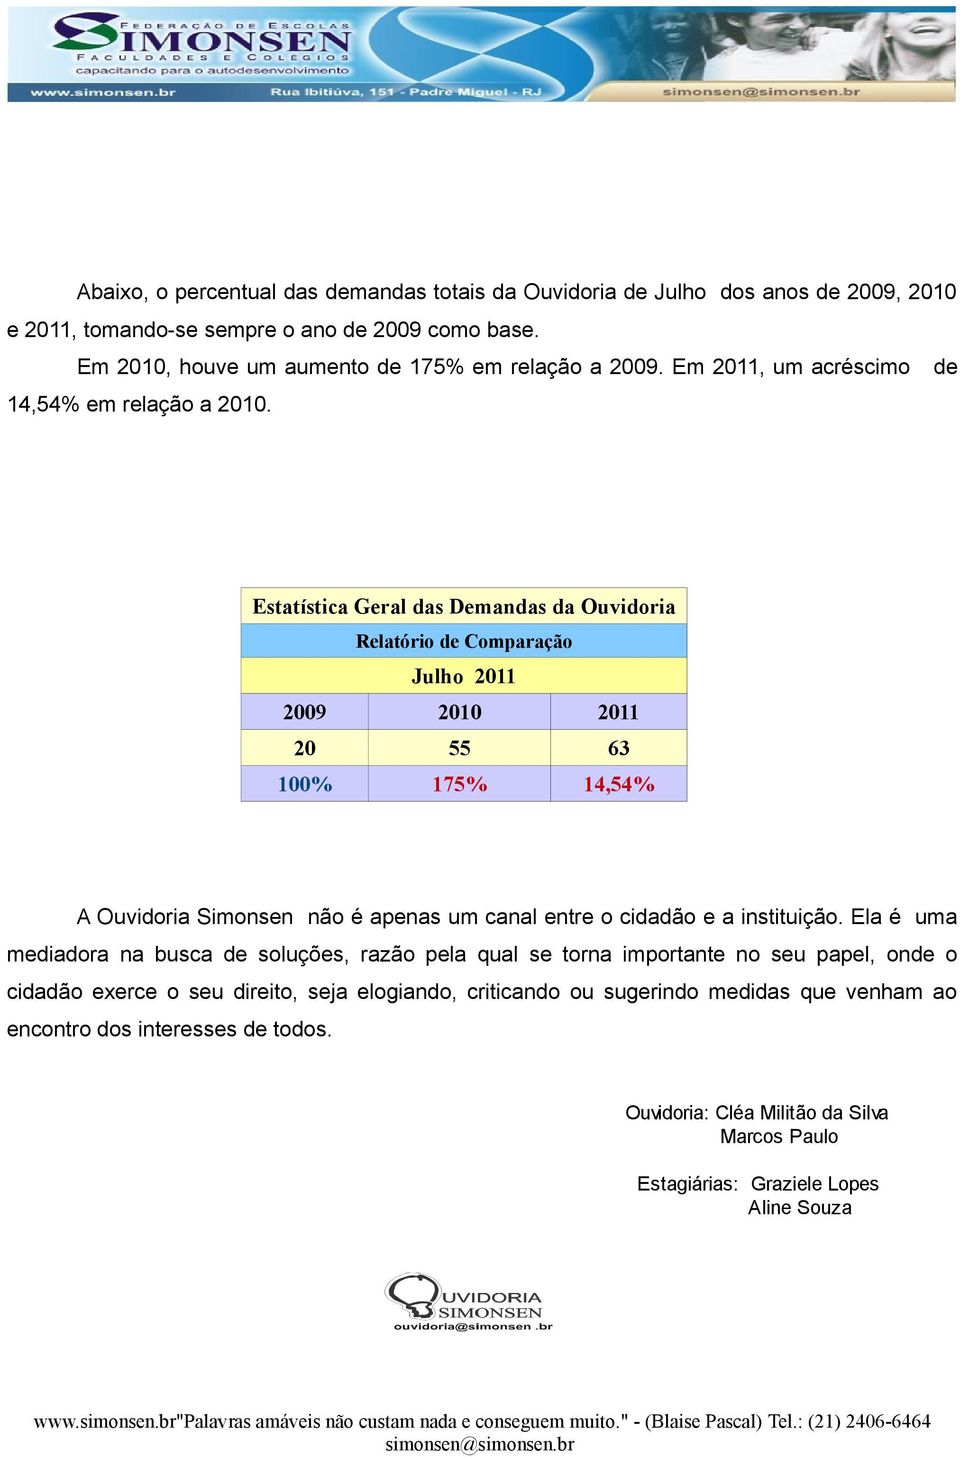 Estatística Geral das Demandas da Ouvidoria Relatório de Comparação Julho 21 2009 20 21 20 55 63 100% 175% 14,54% A Ouvidoria Simonsen não é apenas um canal entre o cidadão e a